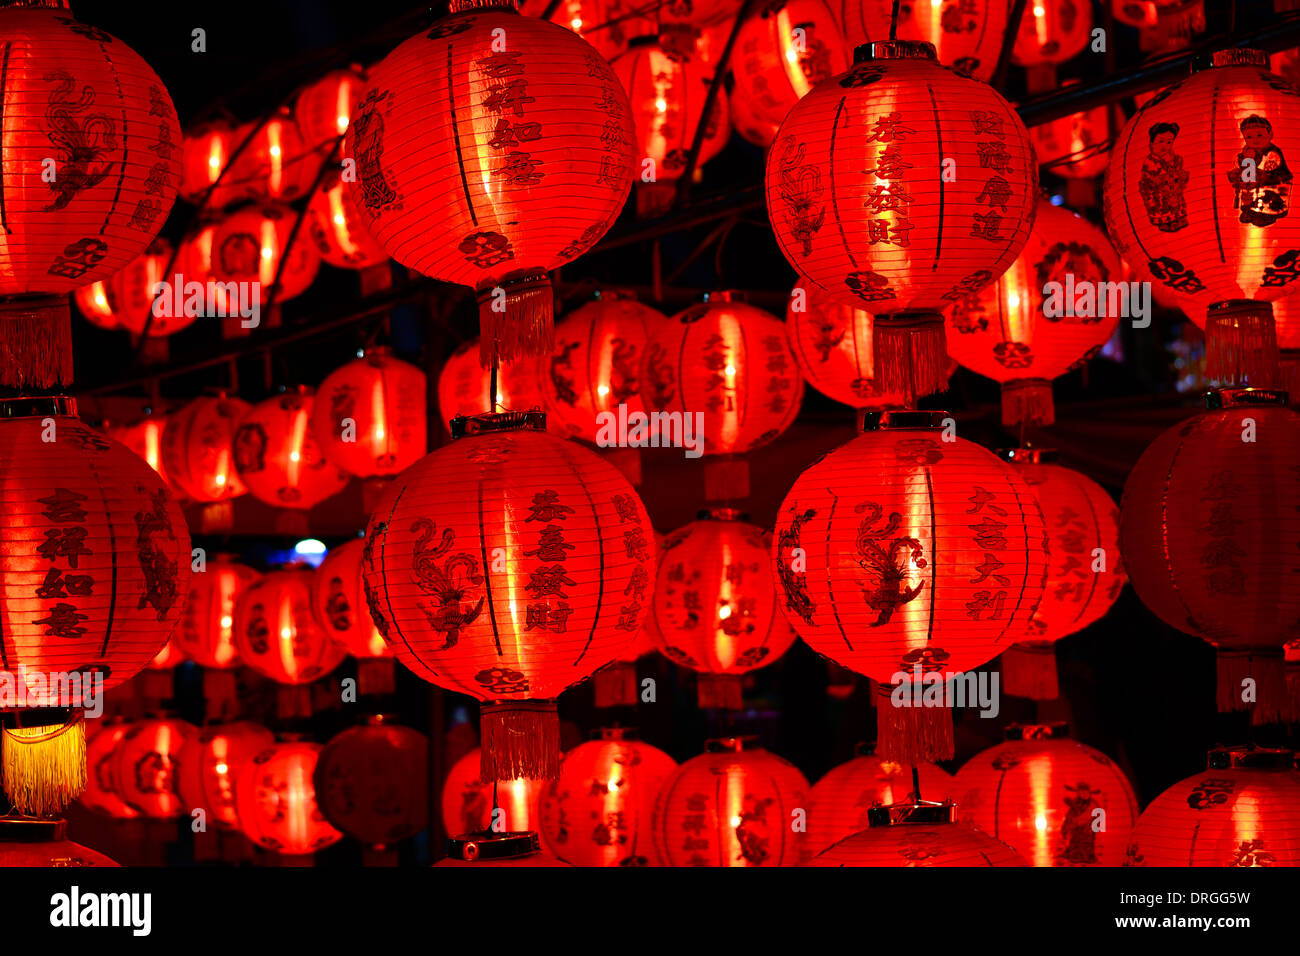 Lanternes chinoises pour le nouvel an chinois dans la nuit Banque D'Images